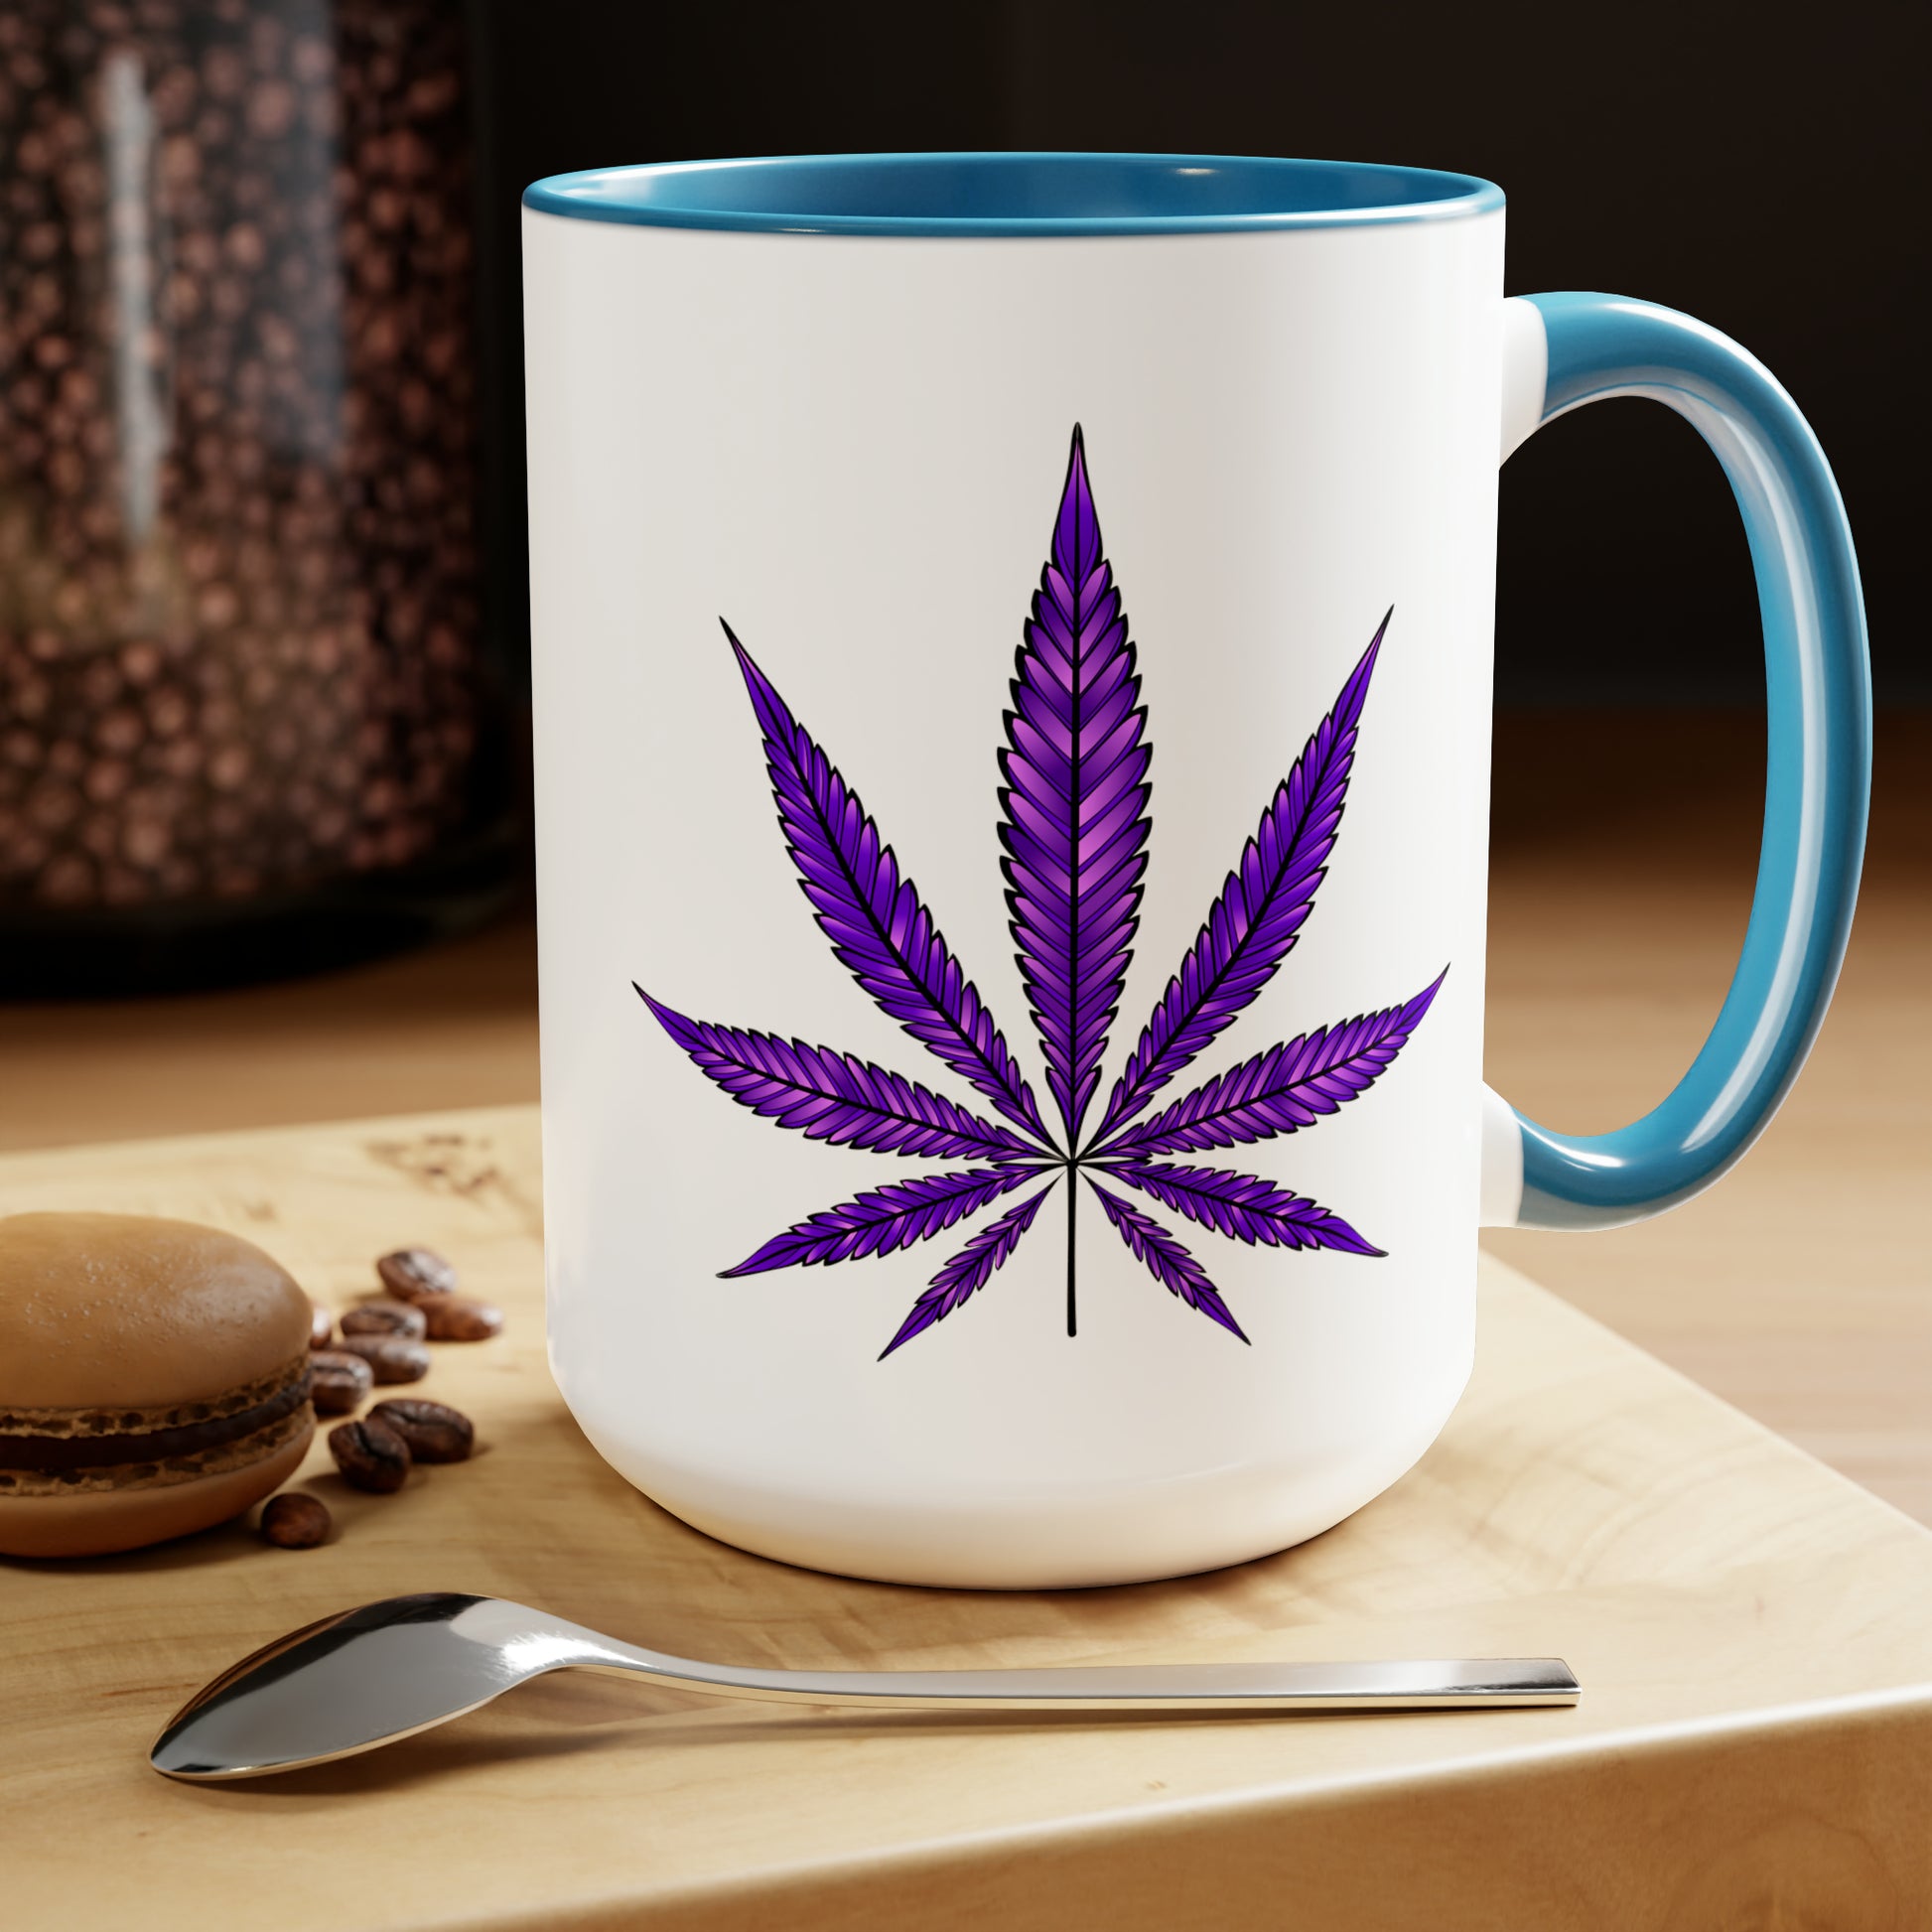 A white Purple Haze Marijuana Coffee Mug with a Purple Haze Marijuana leaf design on it, placed on a wooden table next to a macaron and coffee beans.